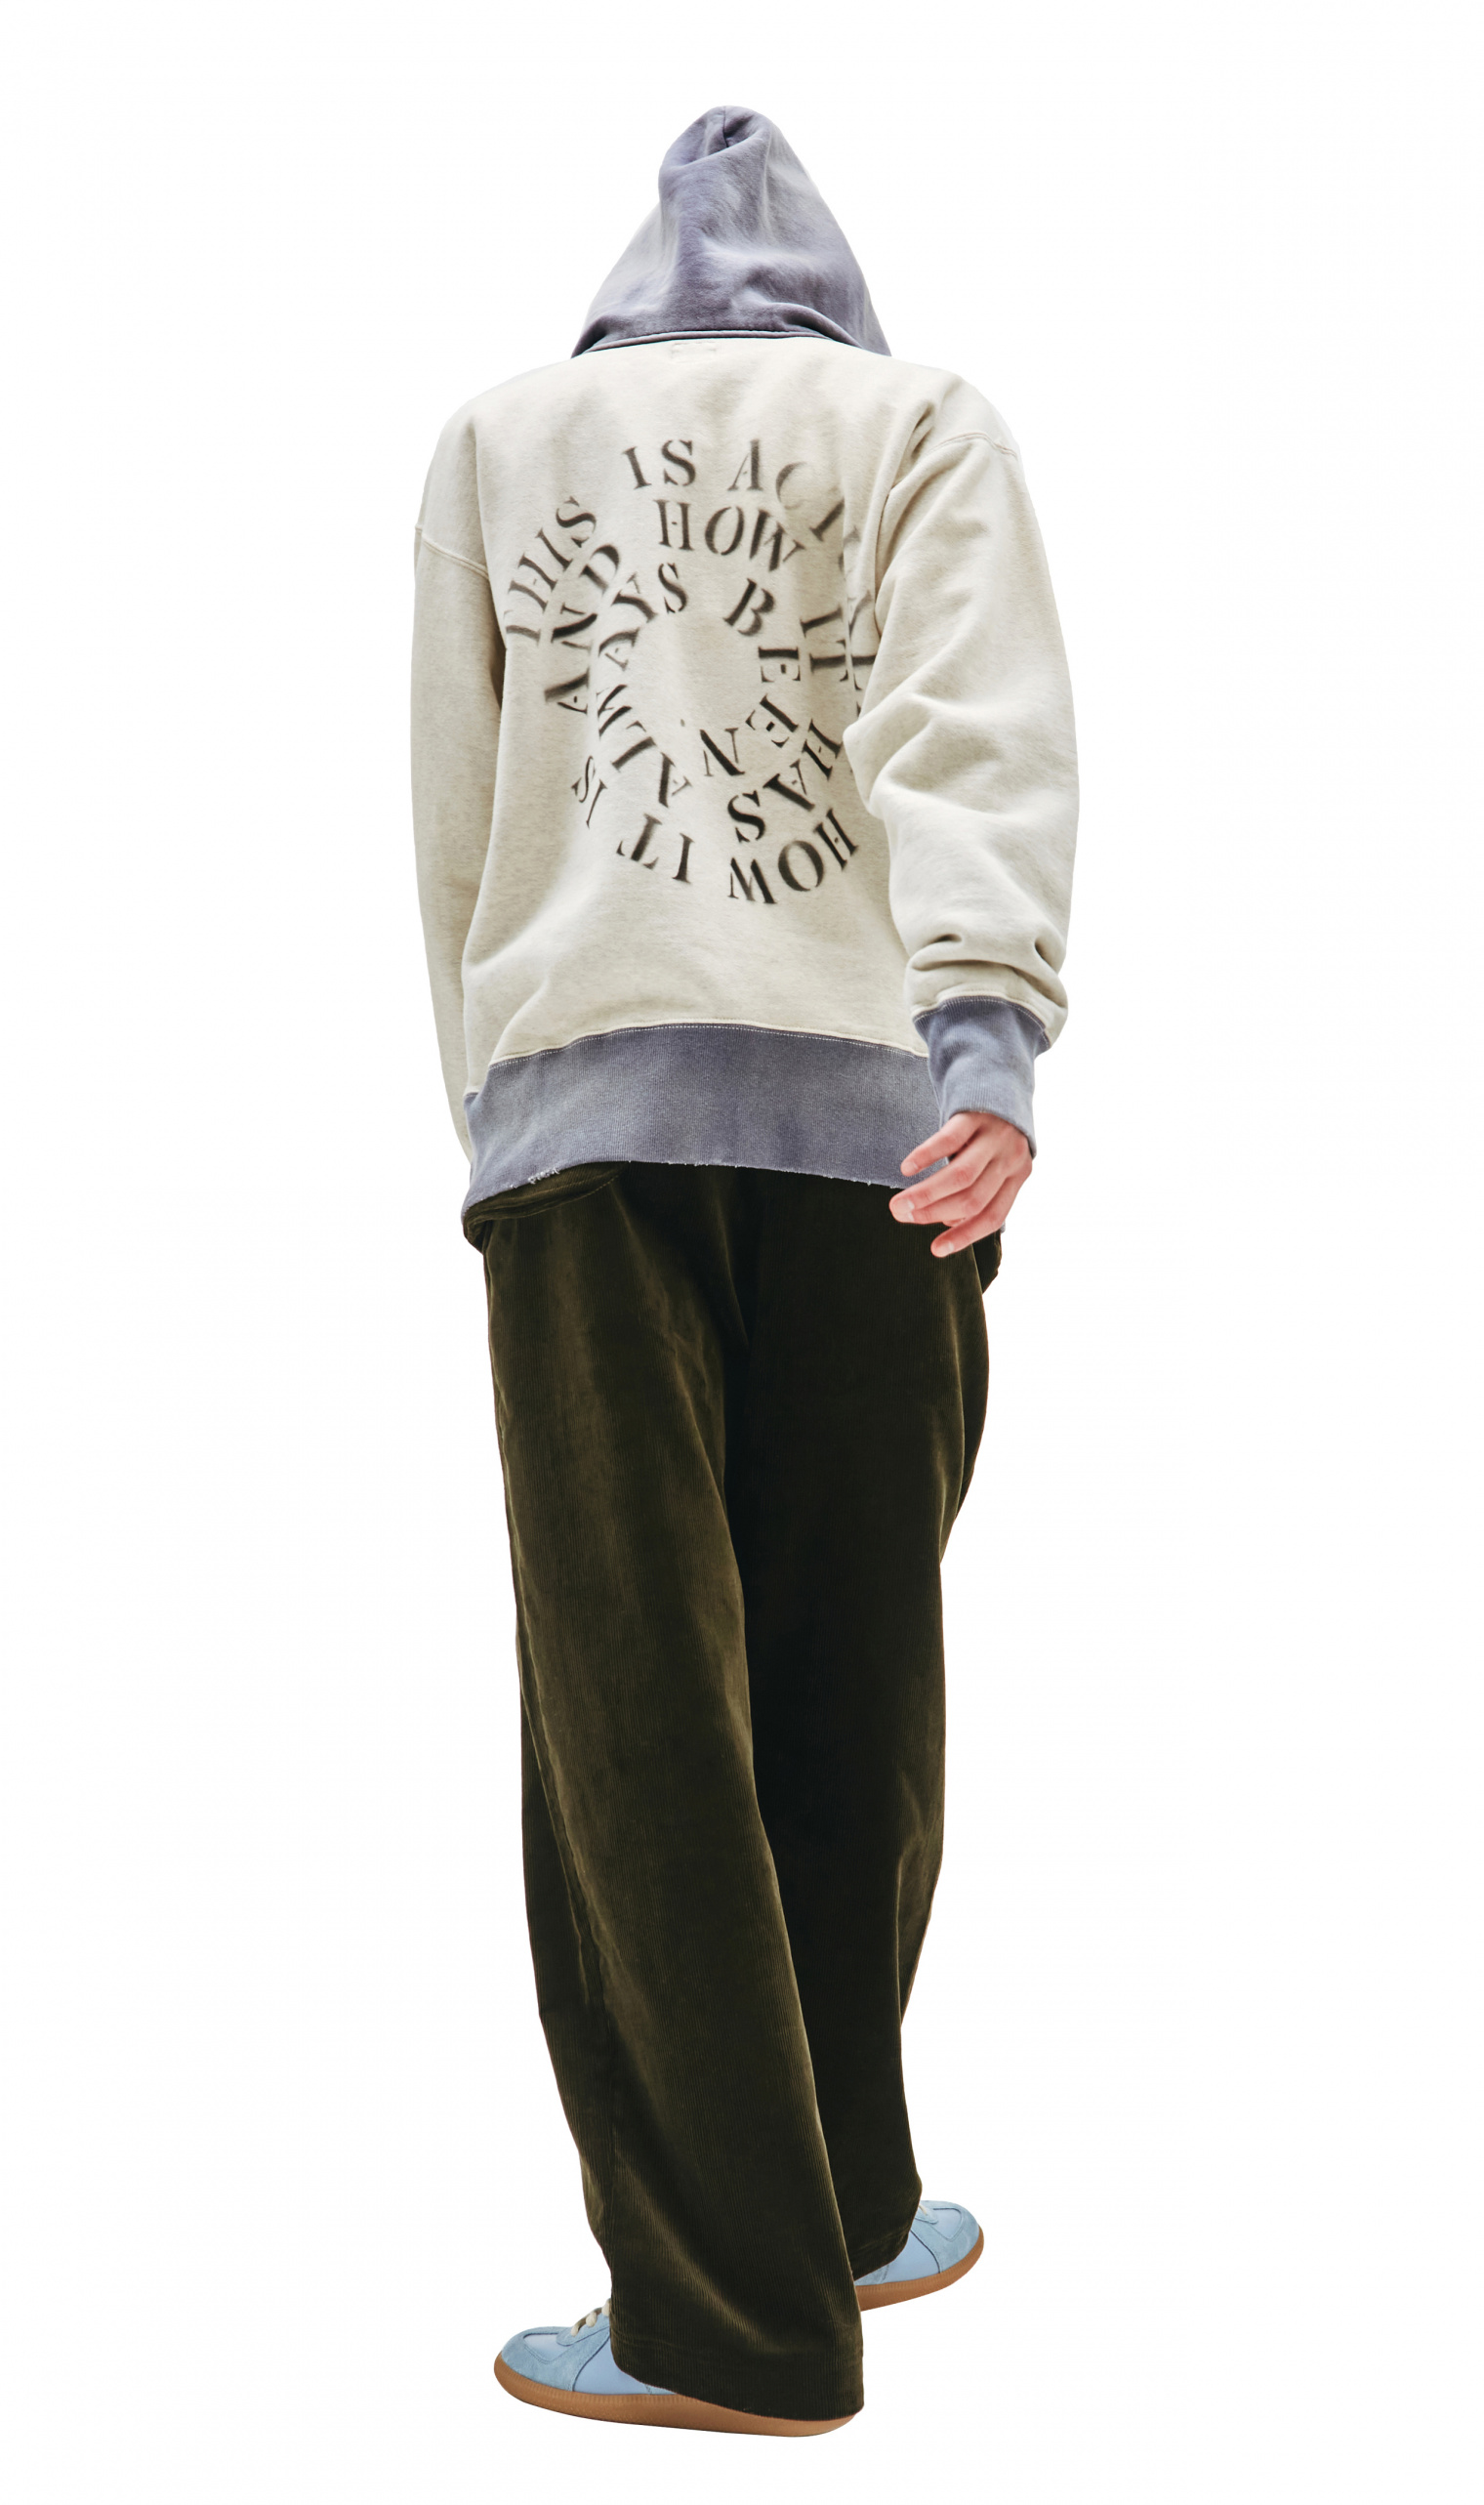 Buy Saint Michael men grey saint printed hoodie for $707 online on 